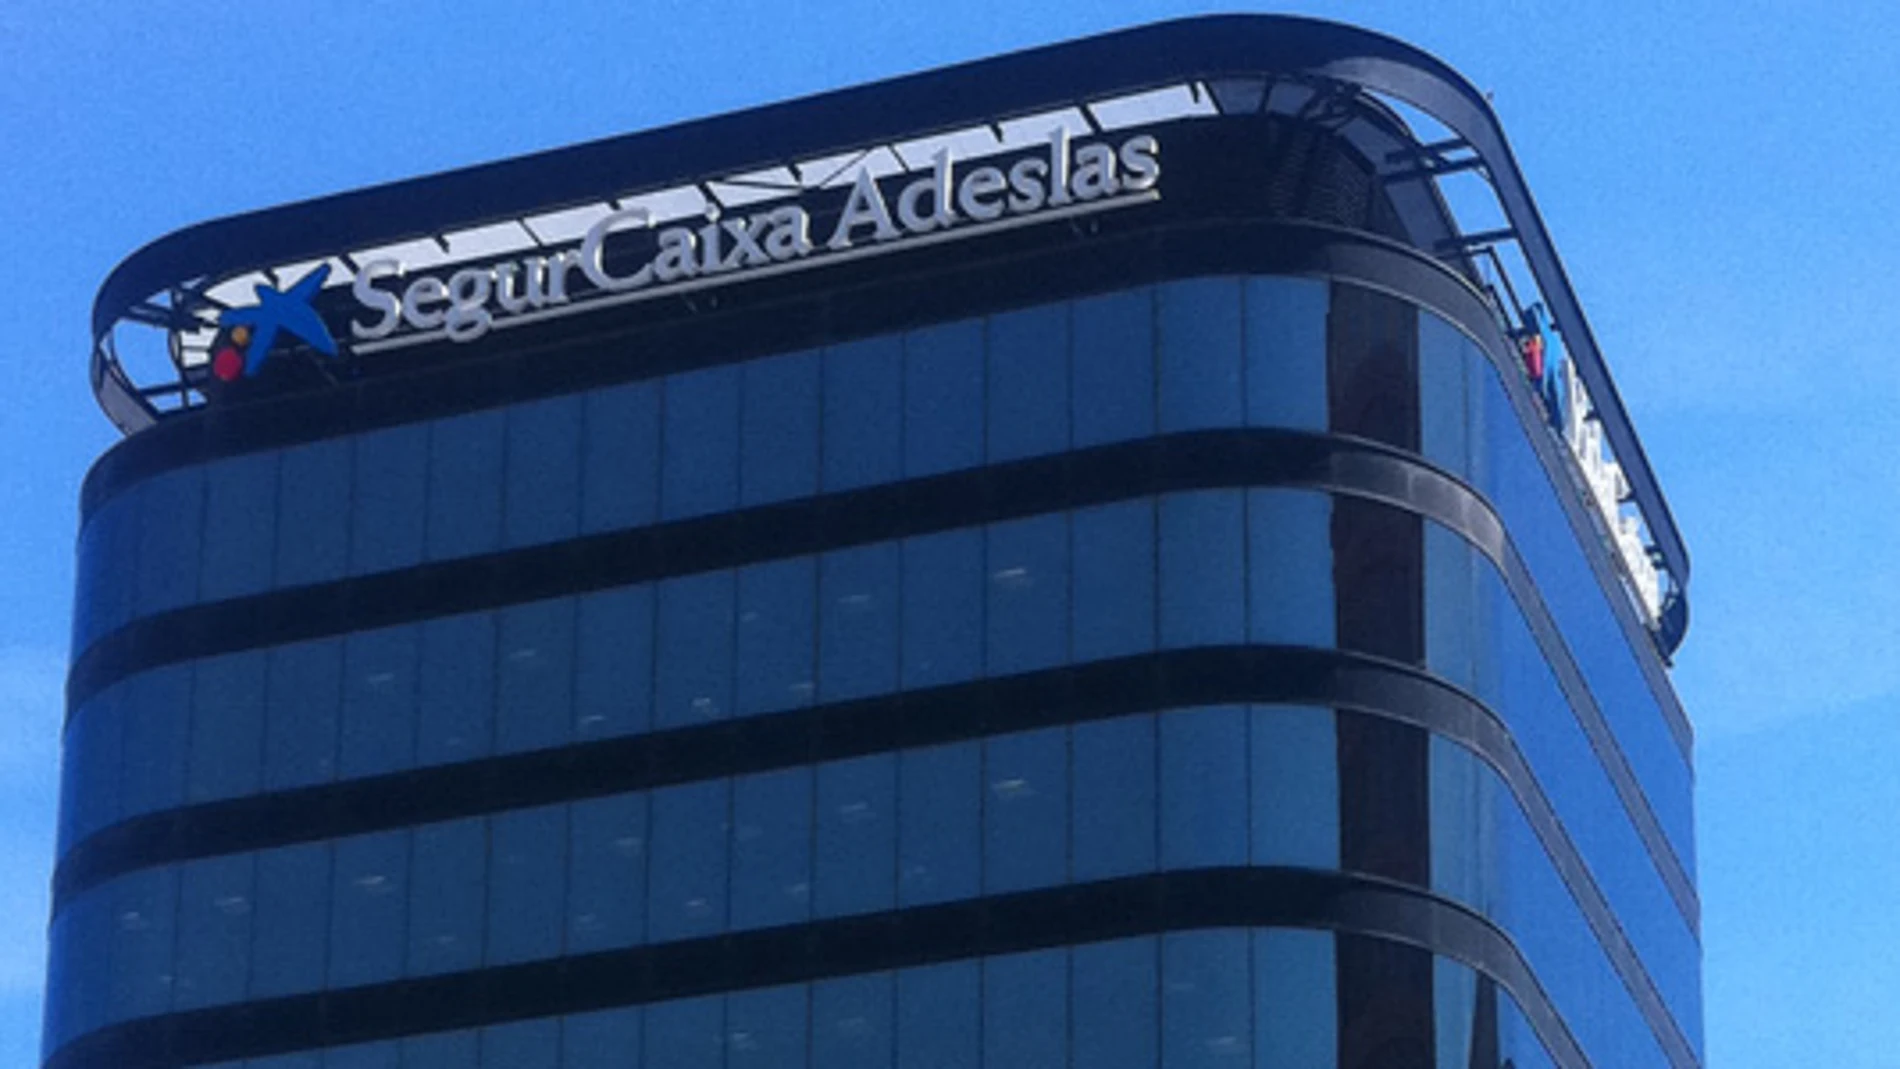 SegurCaixa Adeslas también llevará su sede a Madrid